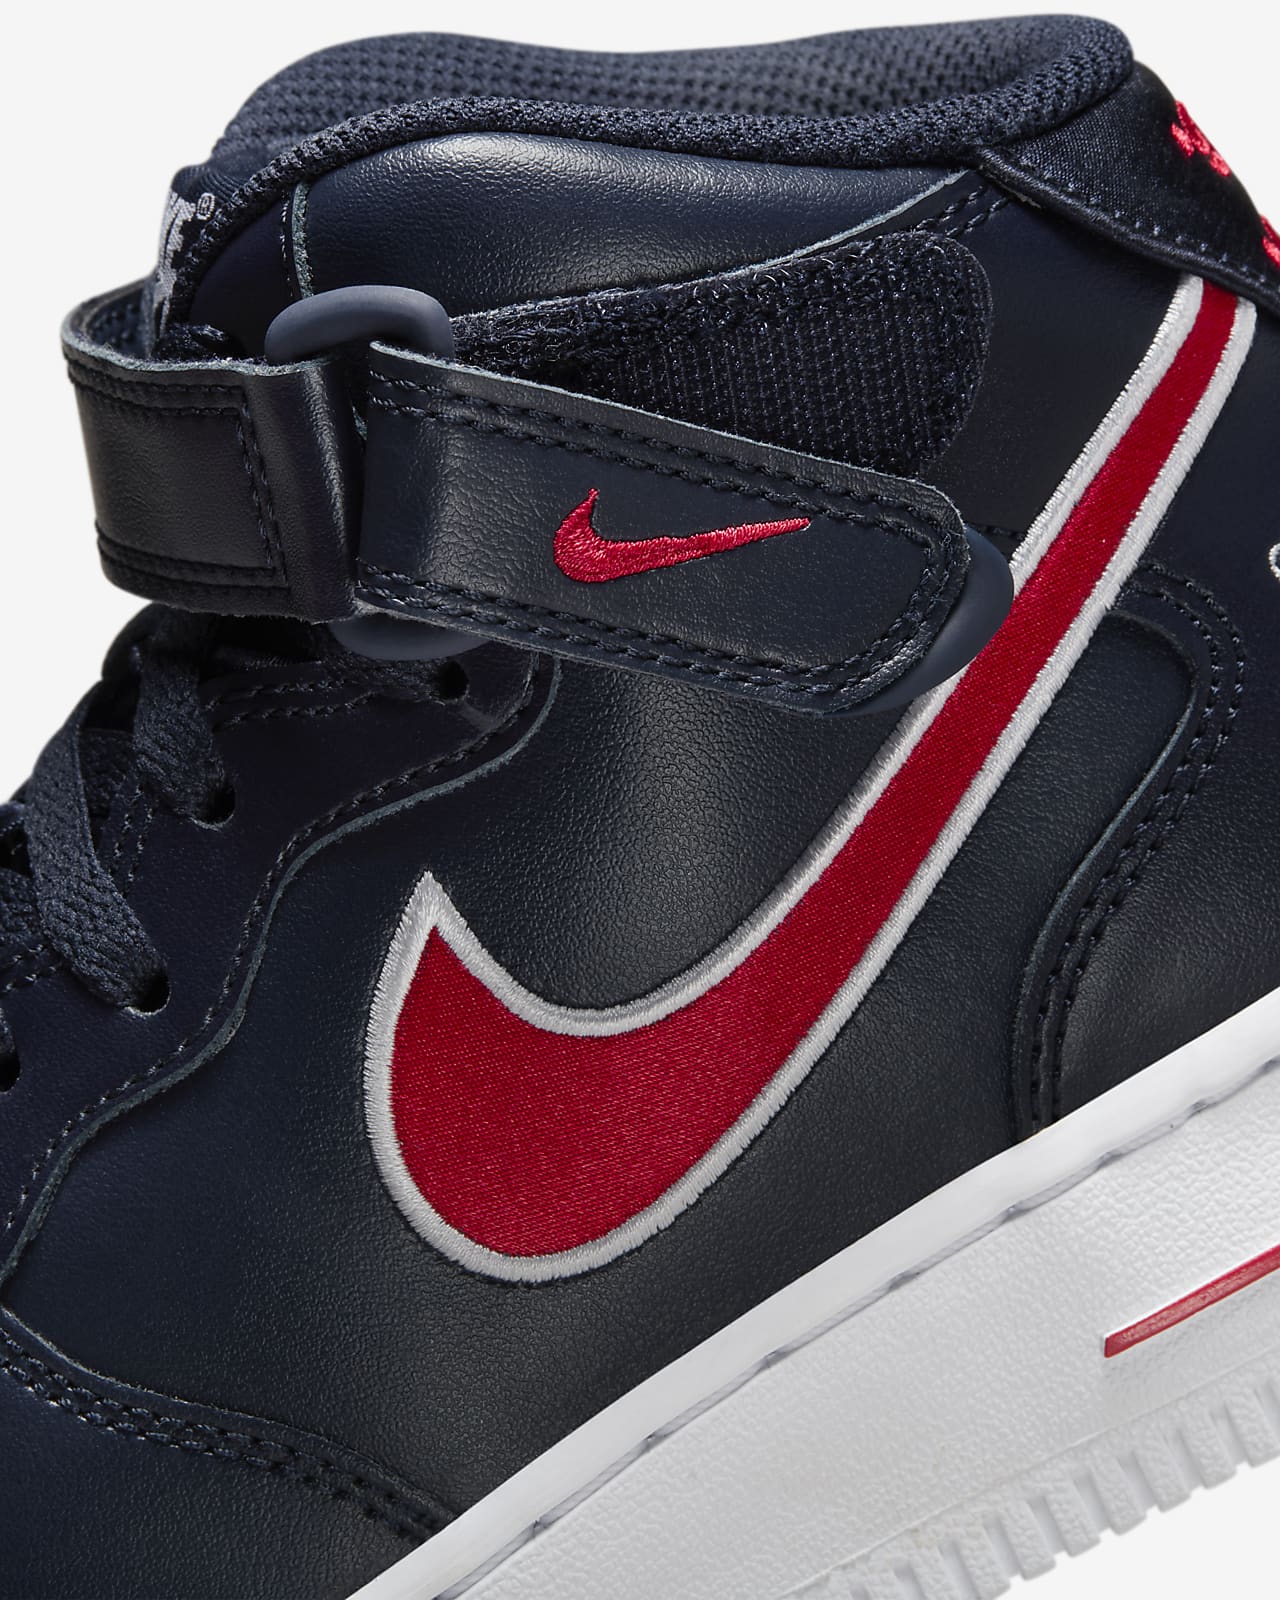 Nike Air Force 1 Mid (Black/Gym Red) - Sneaker Freaker